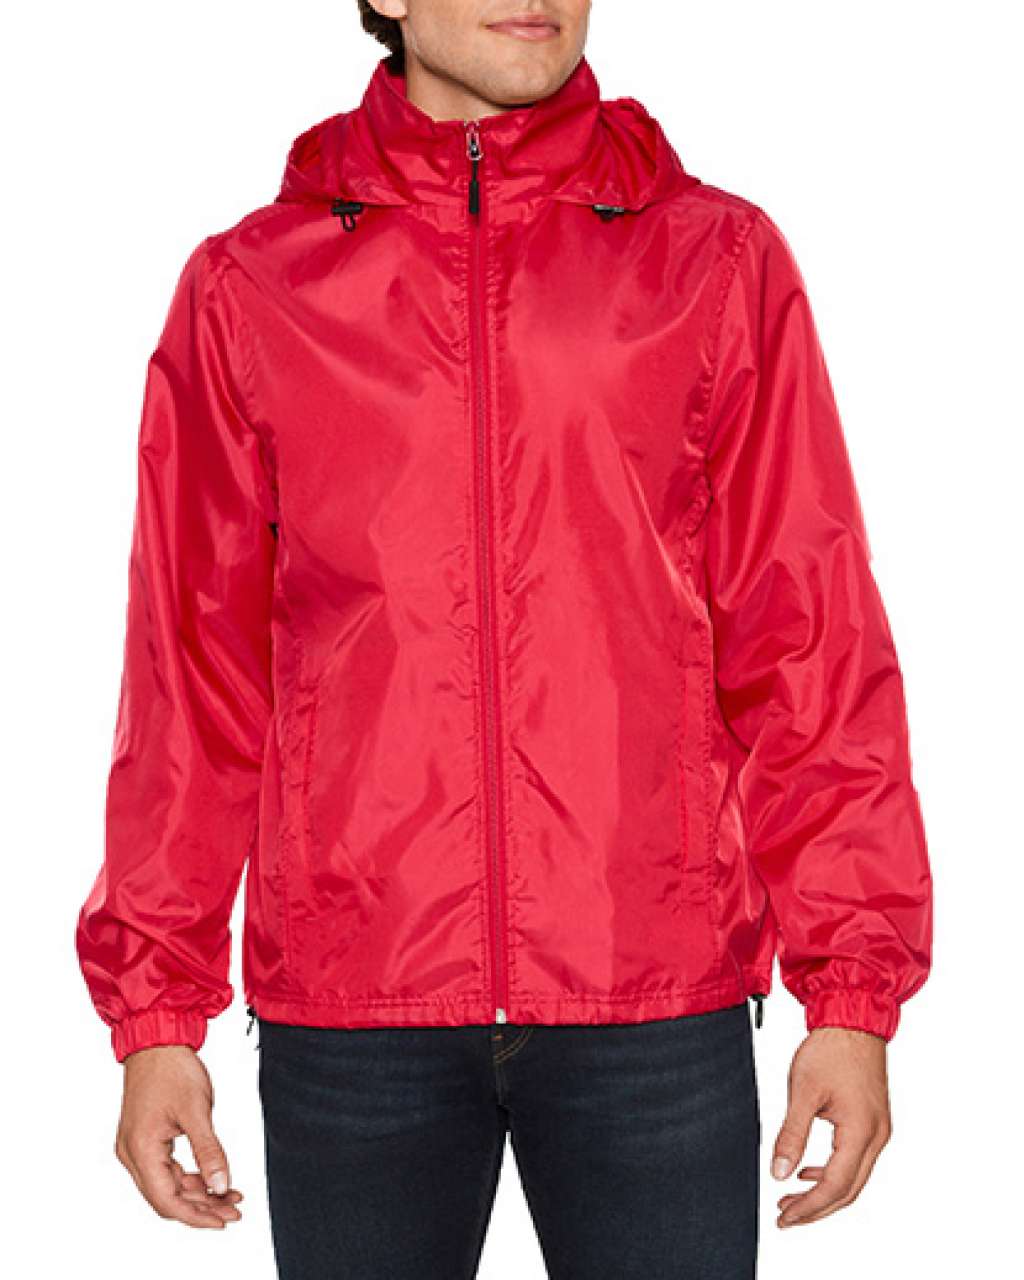 Gildan Hammer Unisex Windwear Jacket - Gildan Hammer Unisex Windwear Jacket - Red